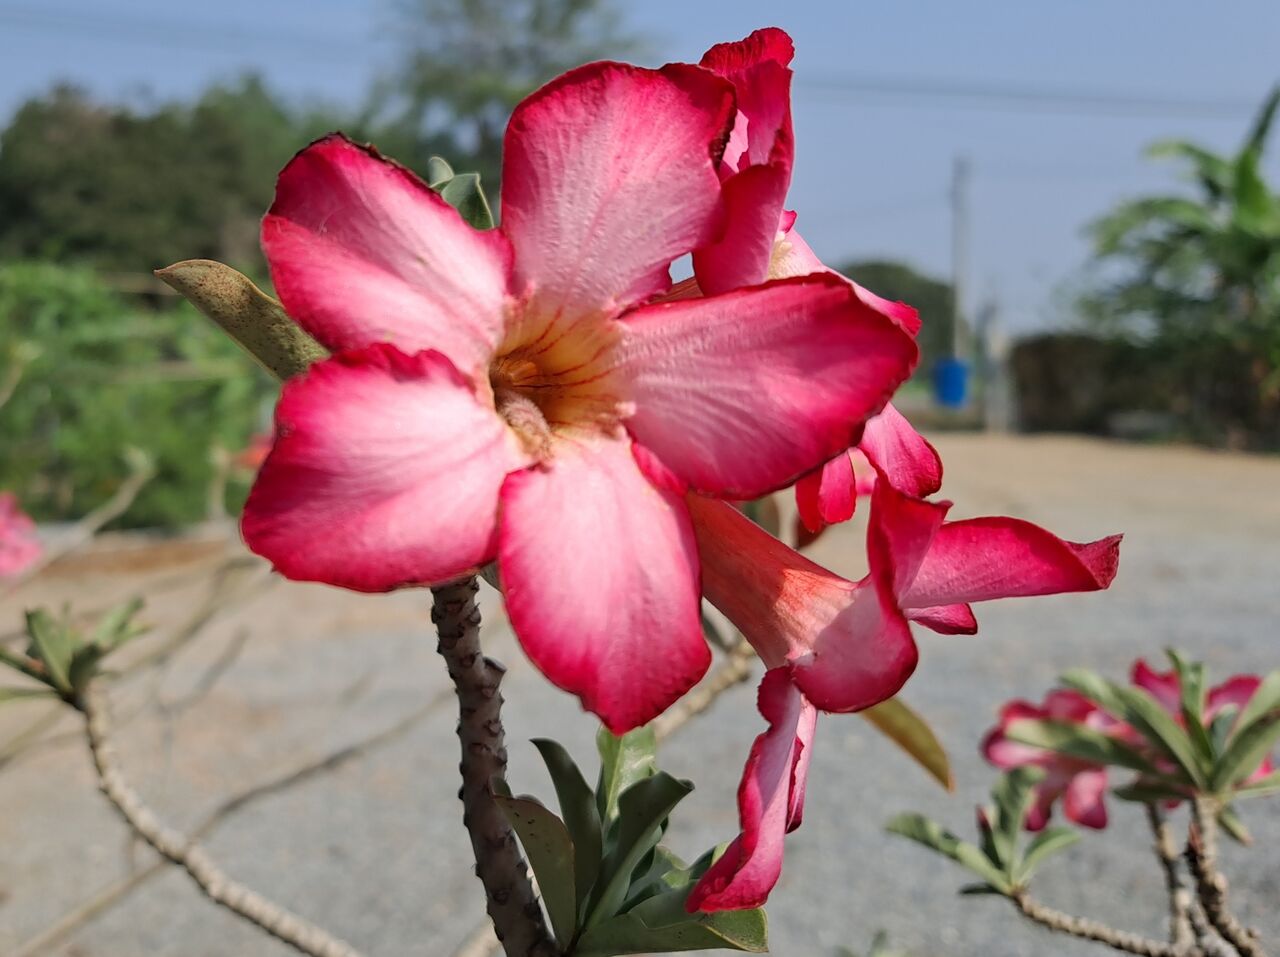 タイで 砂漠のバラ と呼ばれるアデニウムを観察 農タイ生活の備忘録